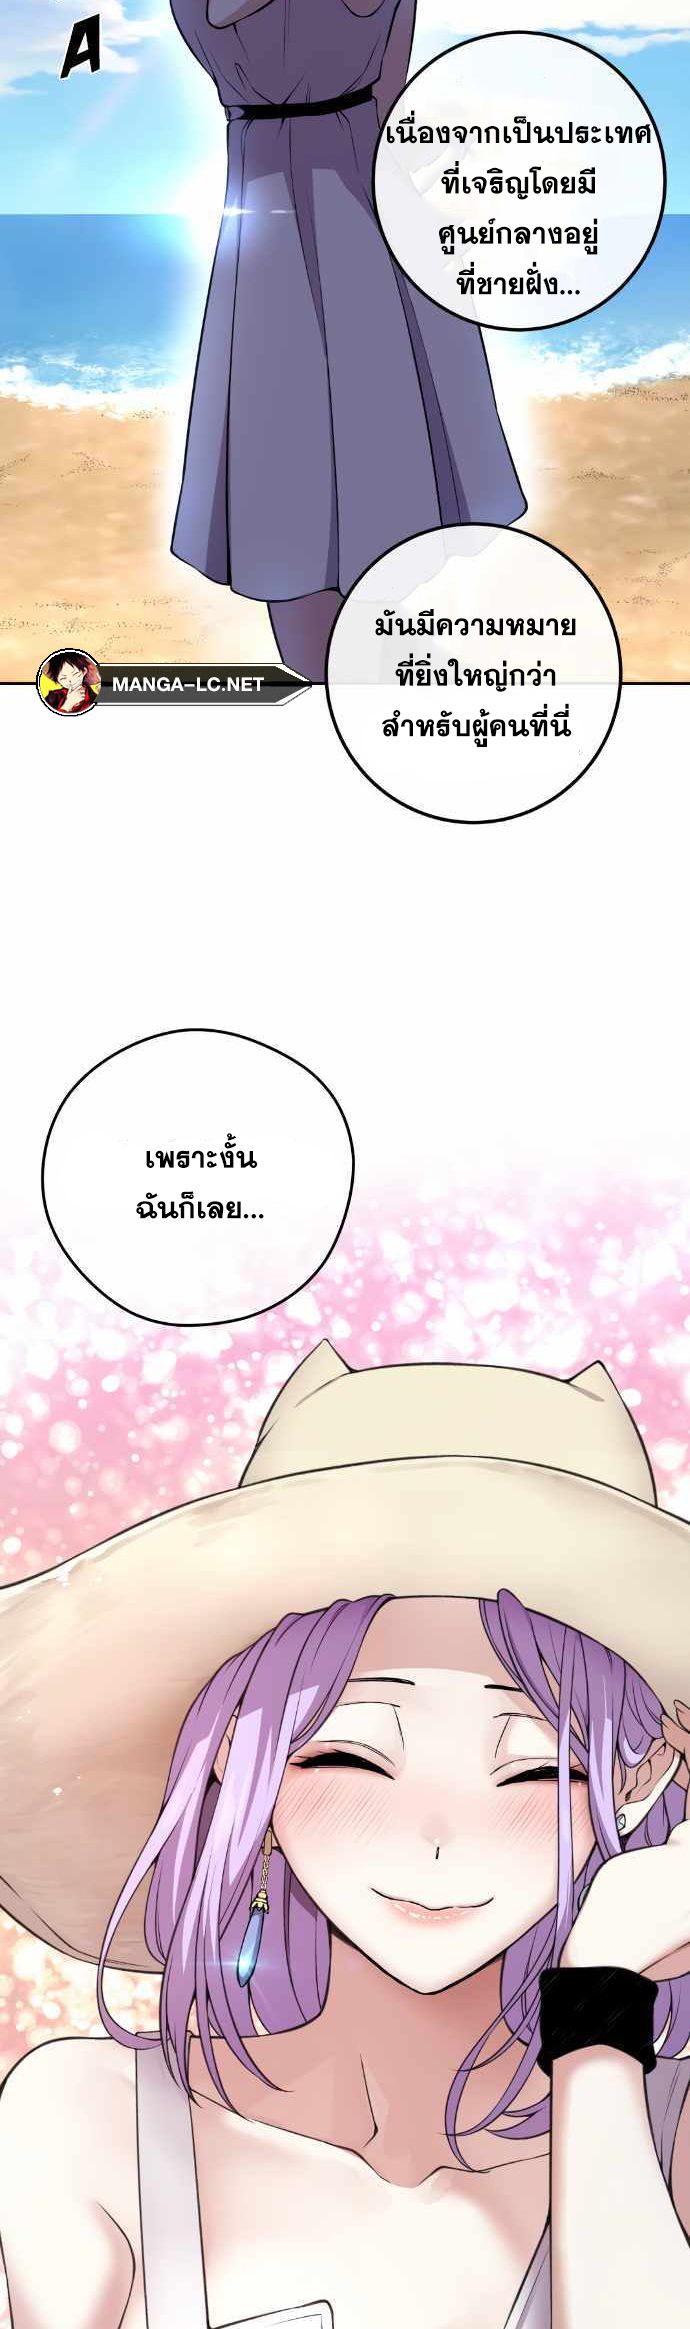 Webtoon Character Na Kang Lim ตอนที่ 122 (35)